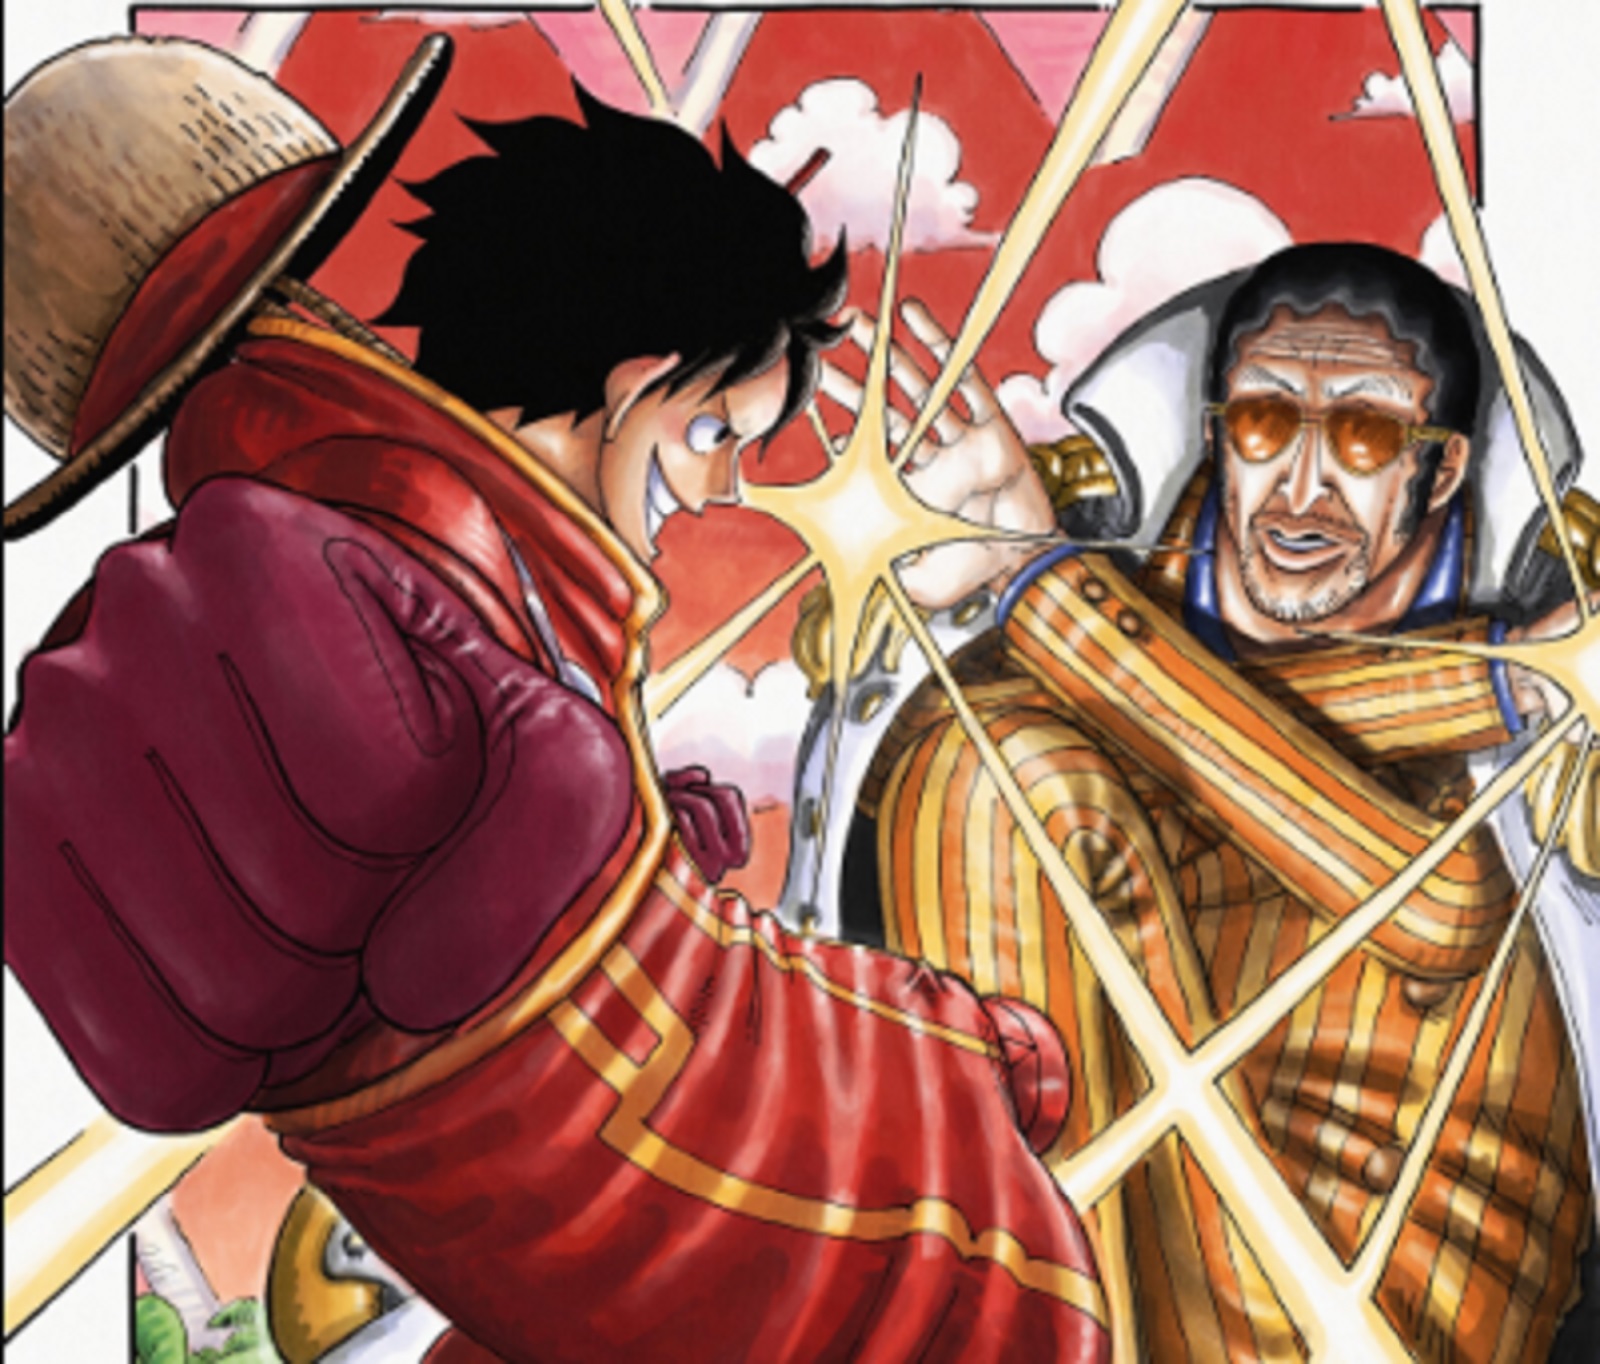 Pertarungan Epik Luffy vs Kizaru dalam One Piece 1092: Aktifkan Gear 5 untuk Mengalahkan Kizaru